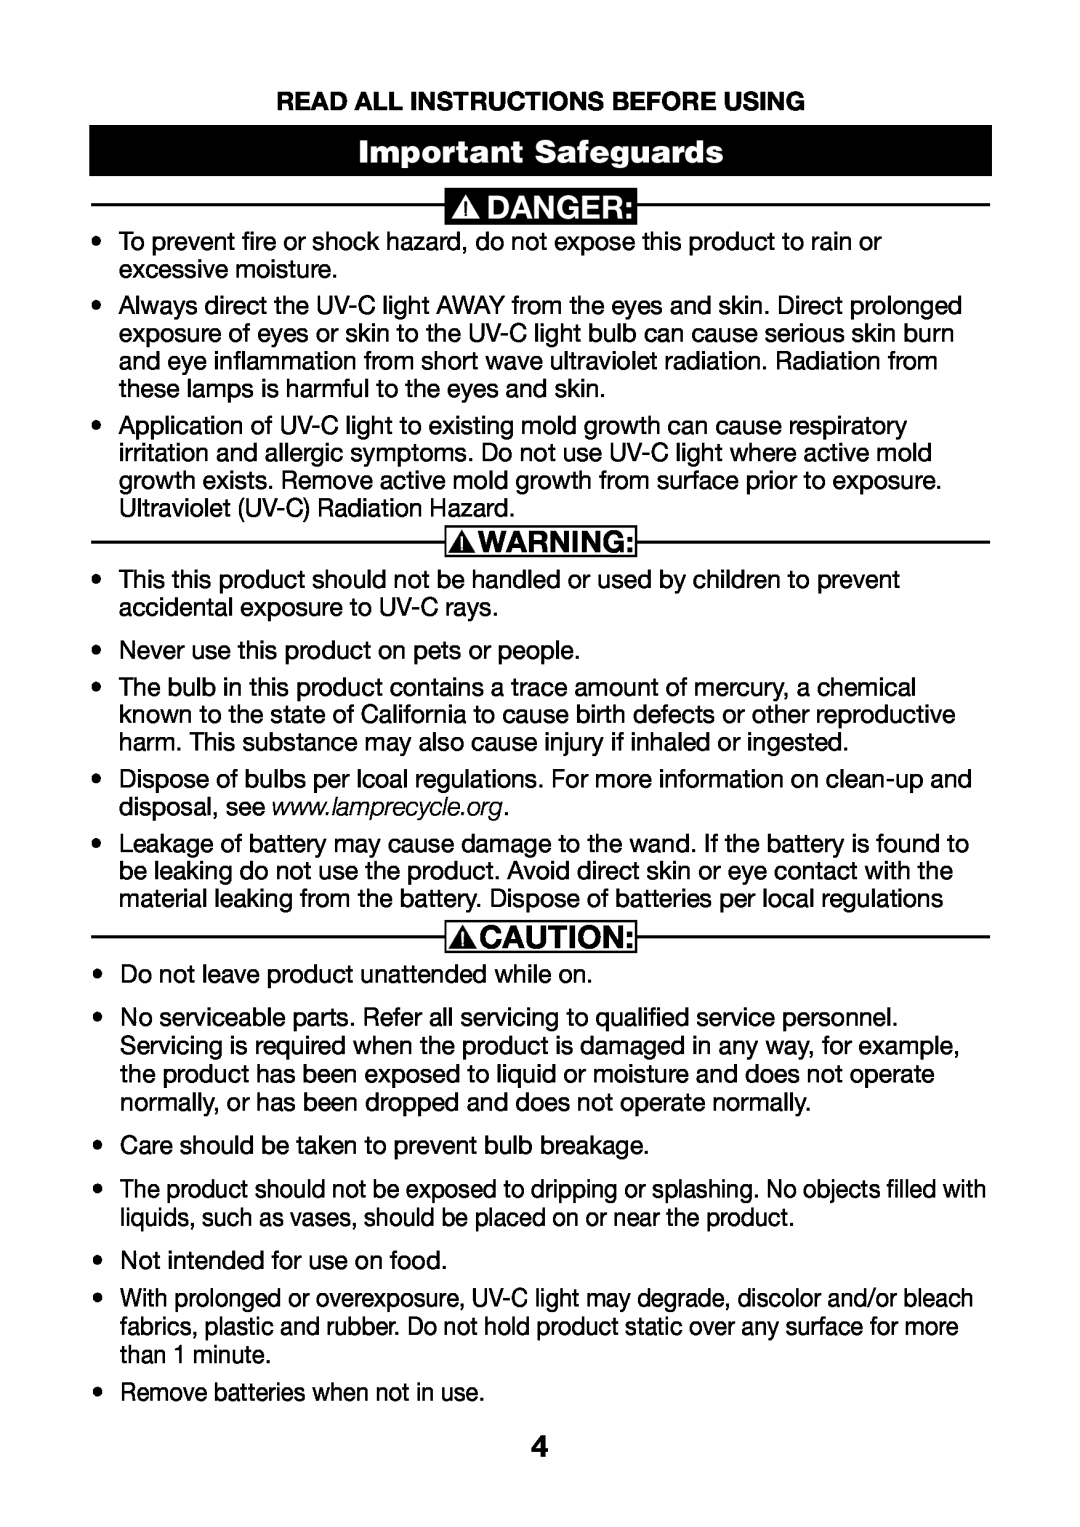 Verilux VH01 manual Important Safeguards, Danger 